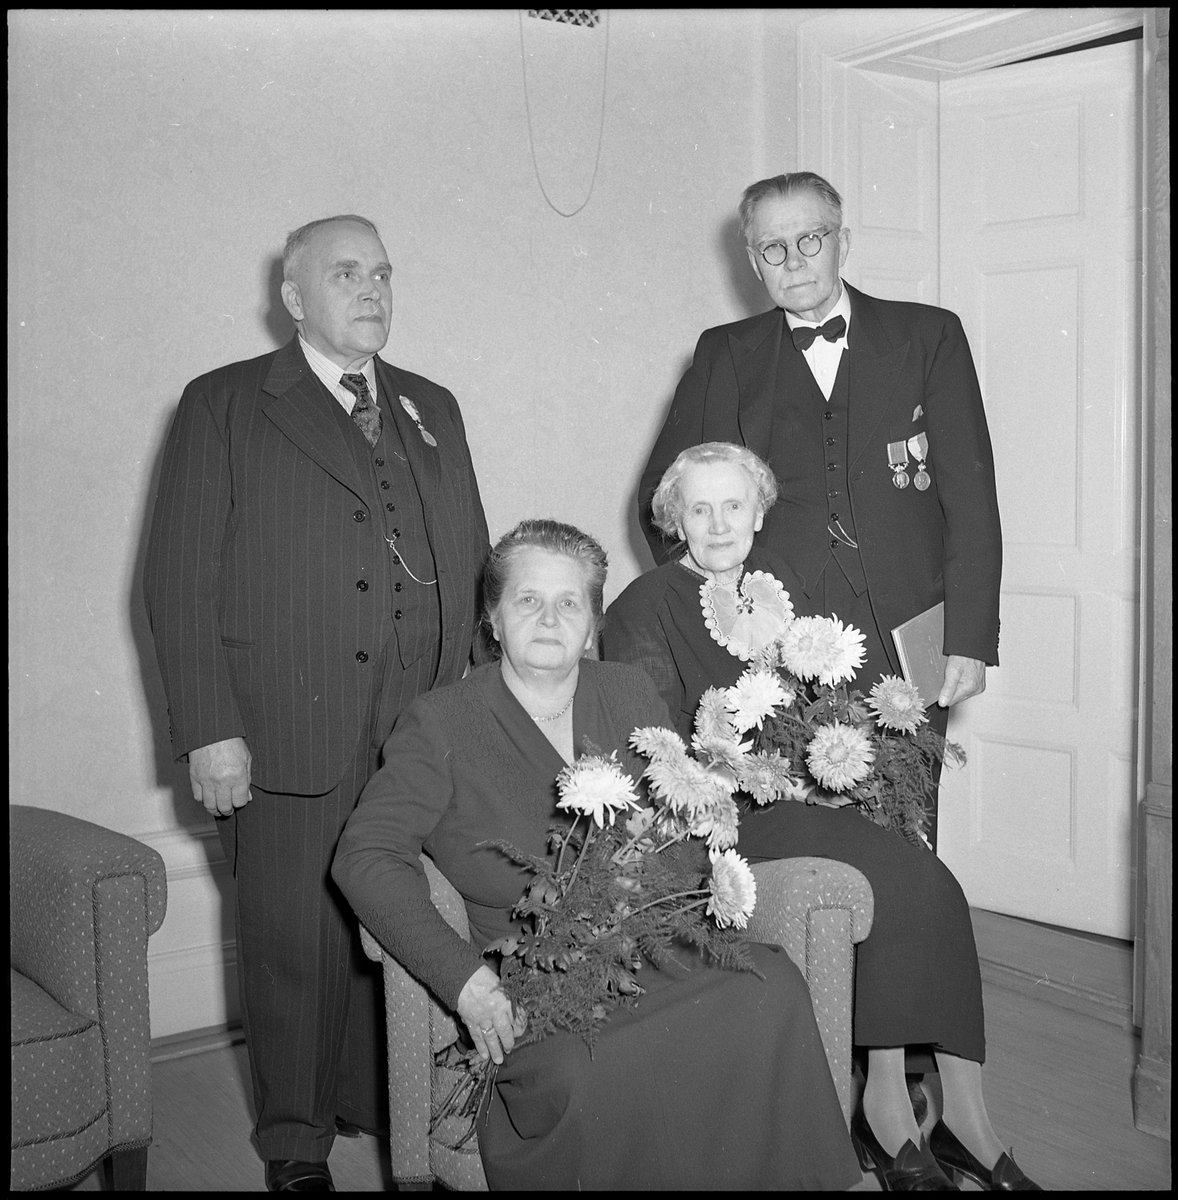 Anna och H.M. Enander tillsammans med ett annat par, eventuellt herr och fru S M Carlsson.